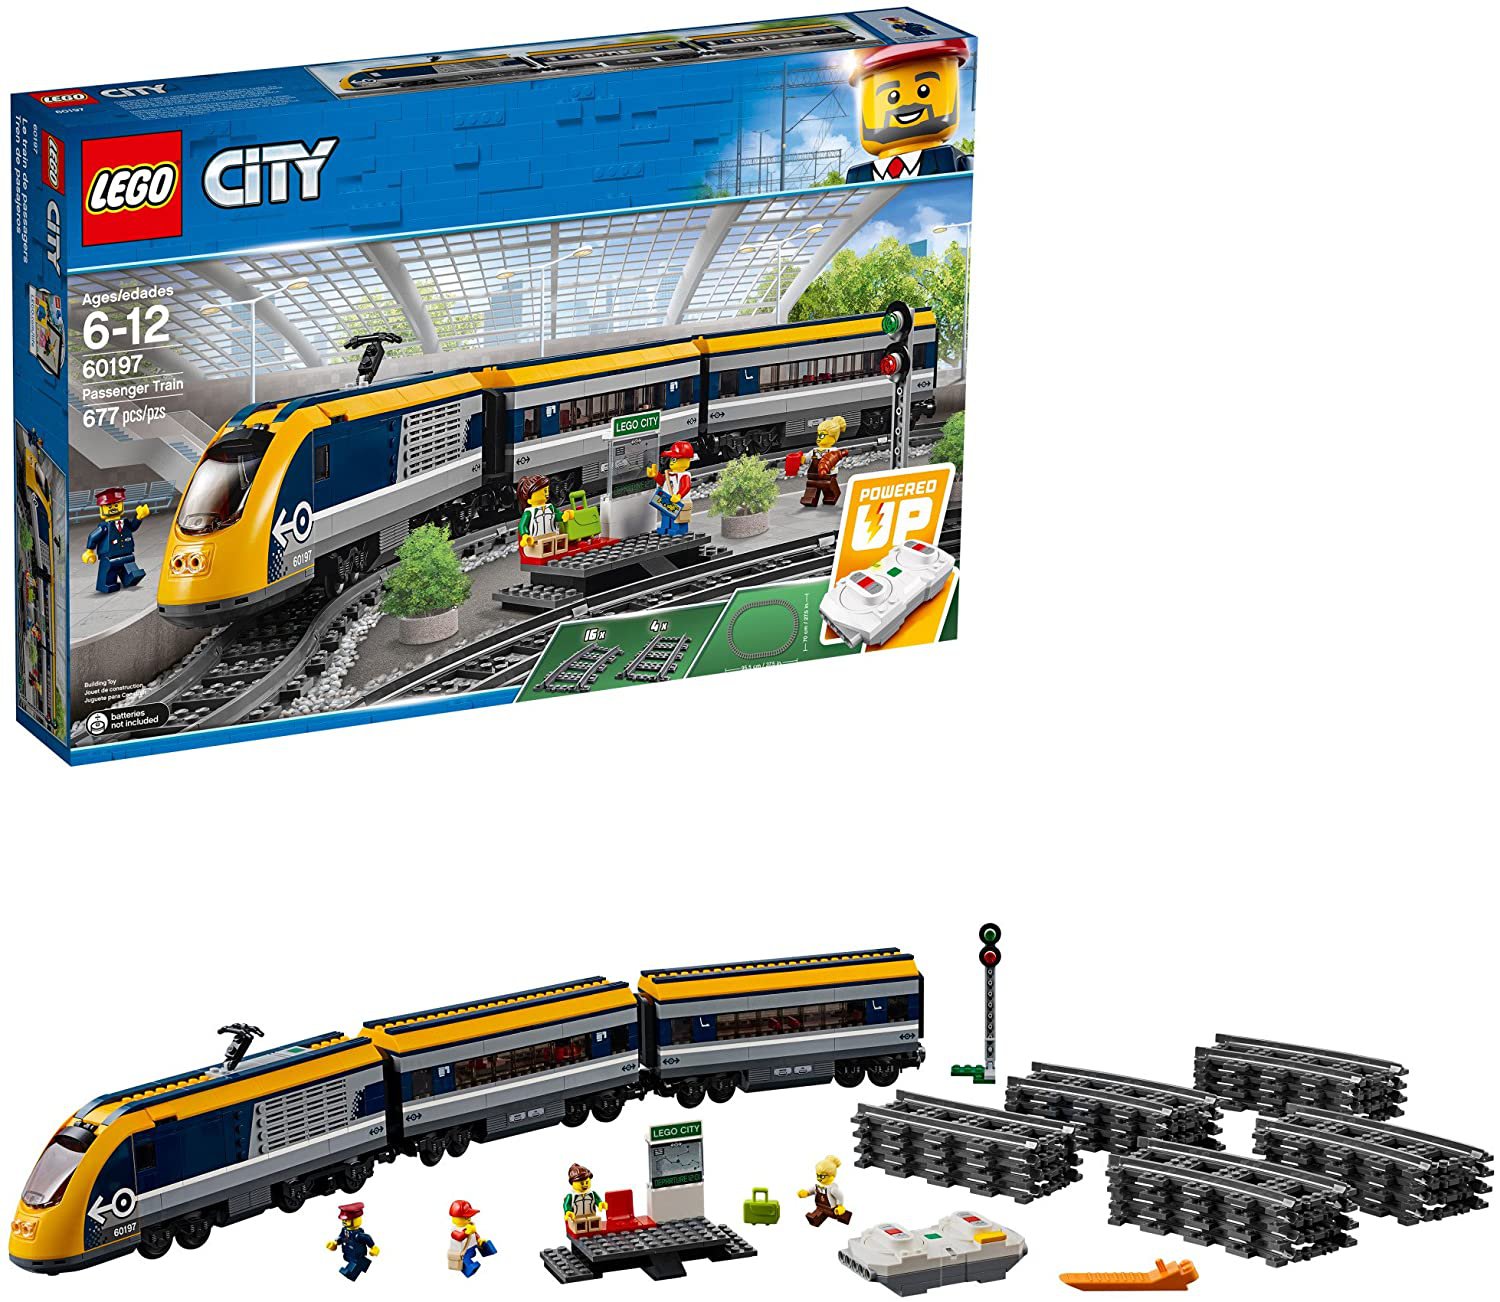 LEGO City Passenger Train 60197 Building Kit (677 Pieces)